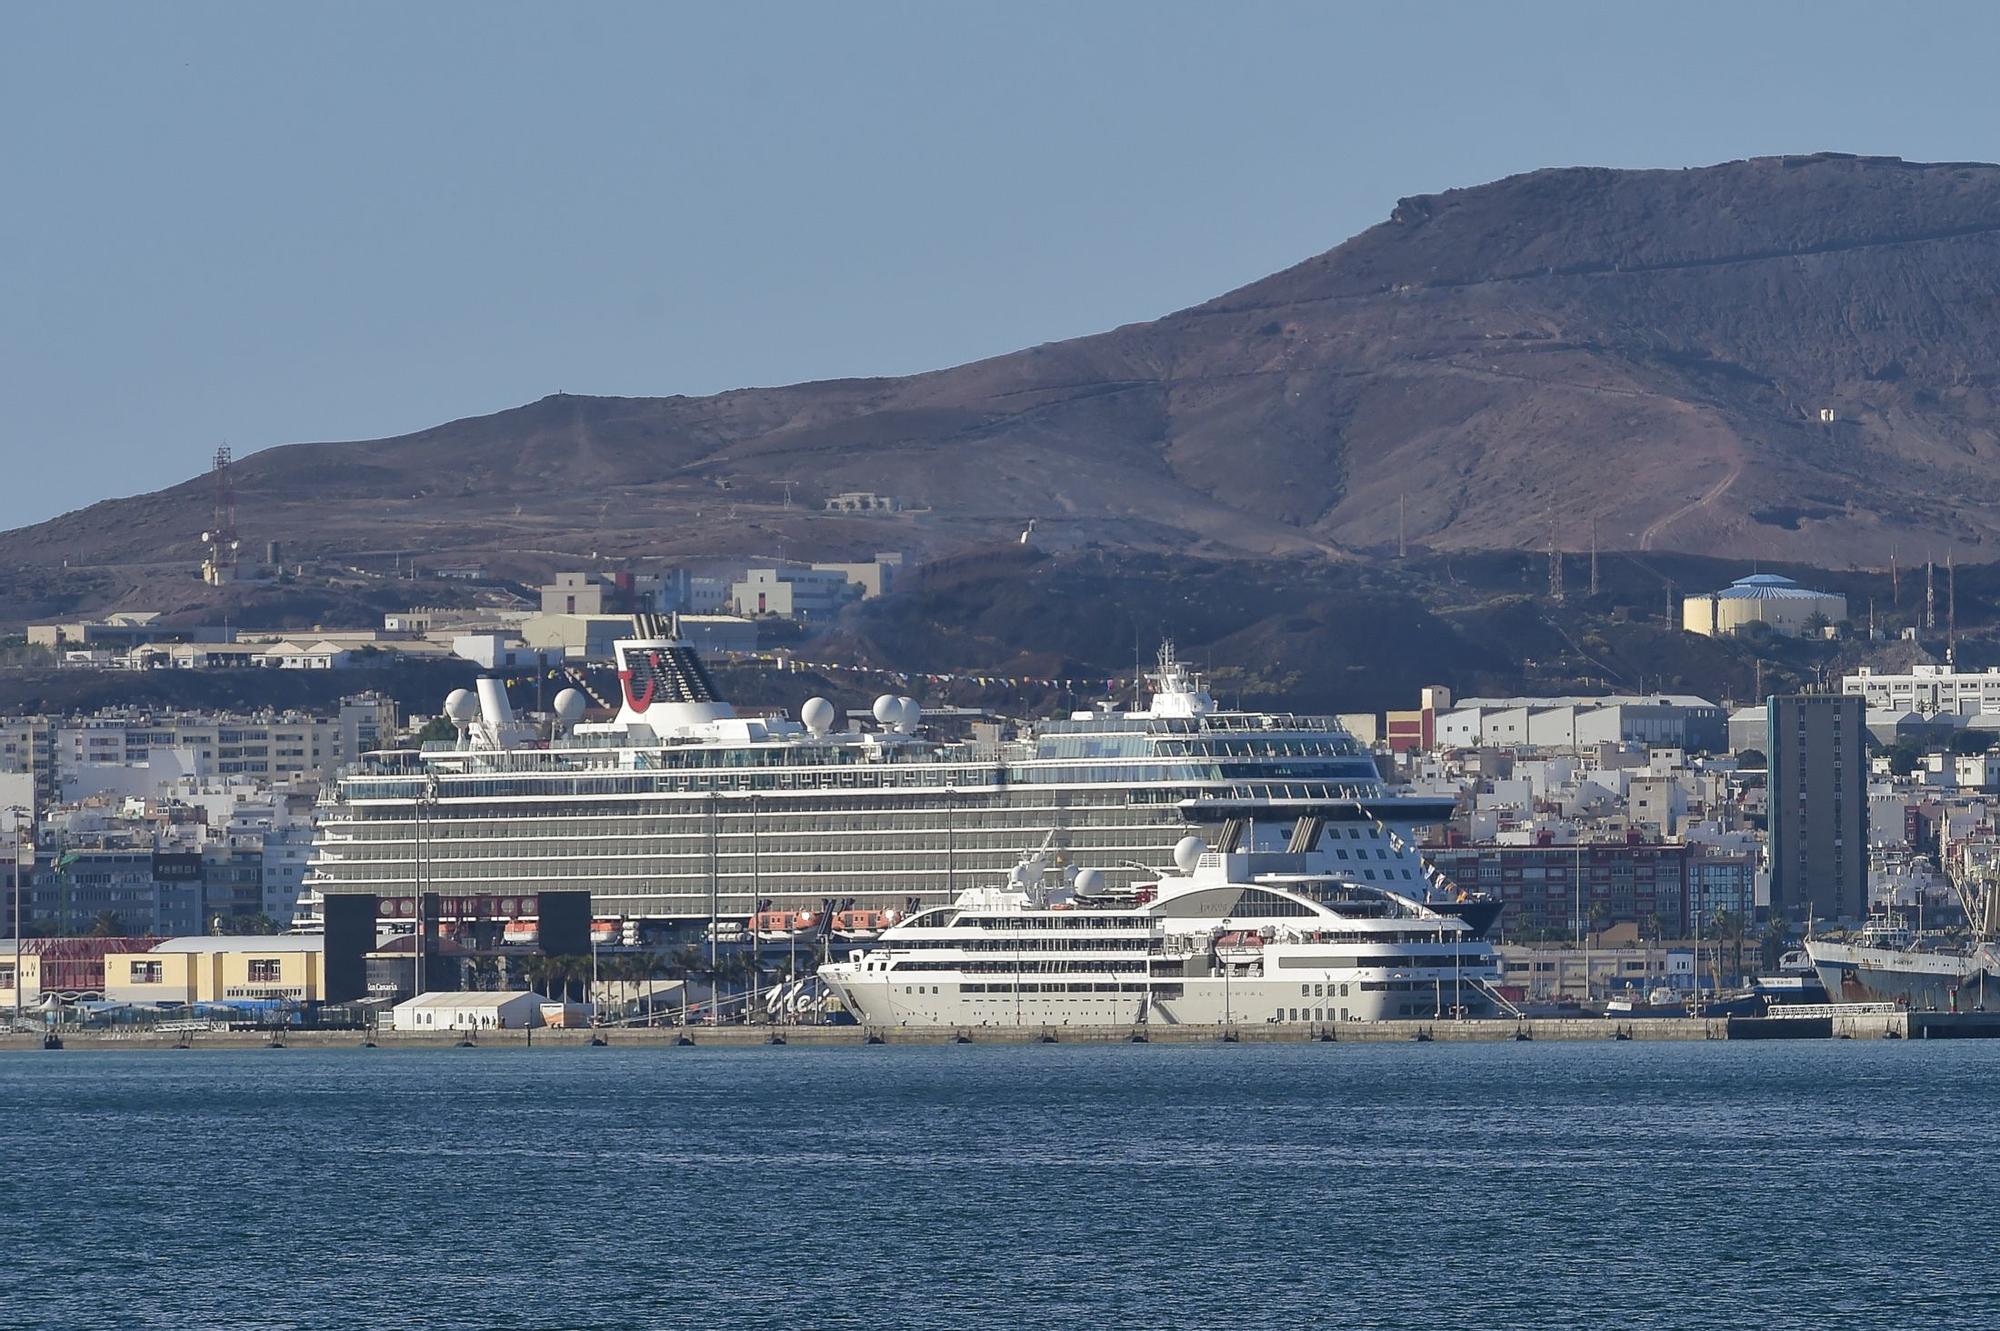 Crucero  Scenic Eclipse en el Puerto de Las Palmas